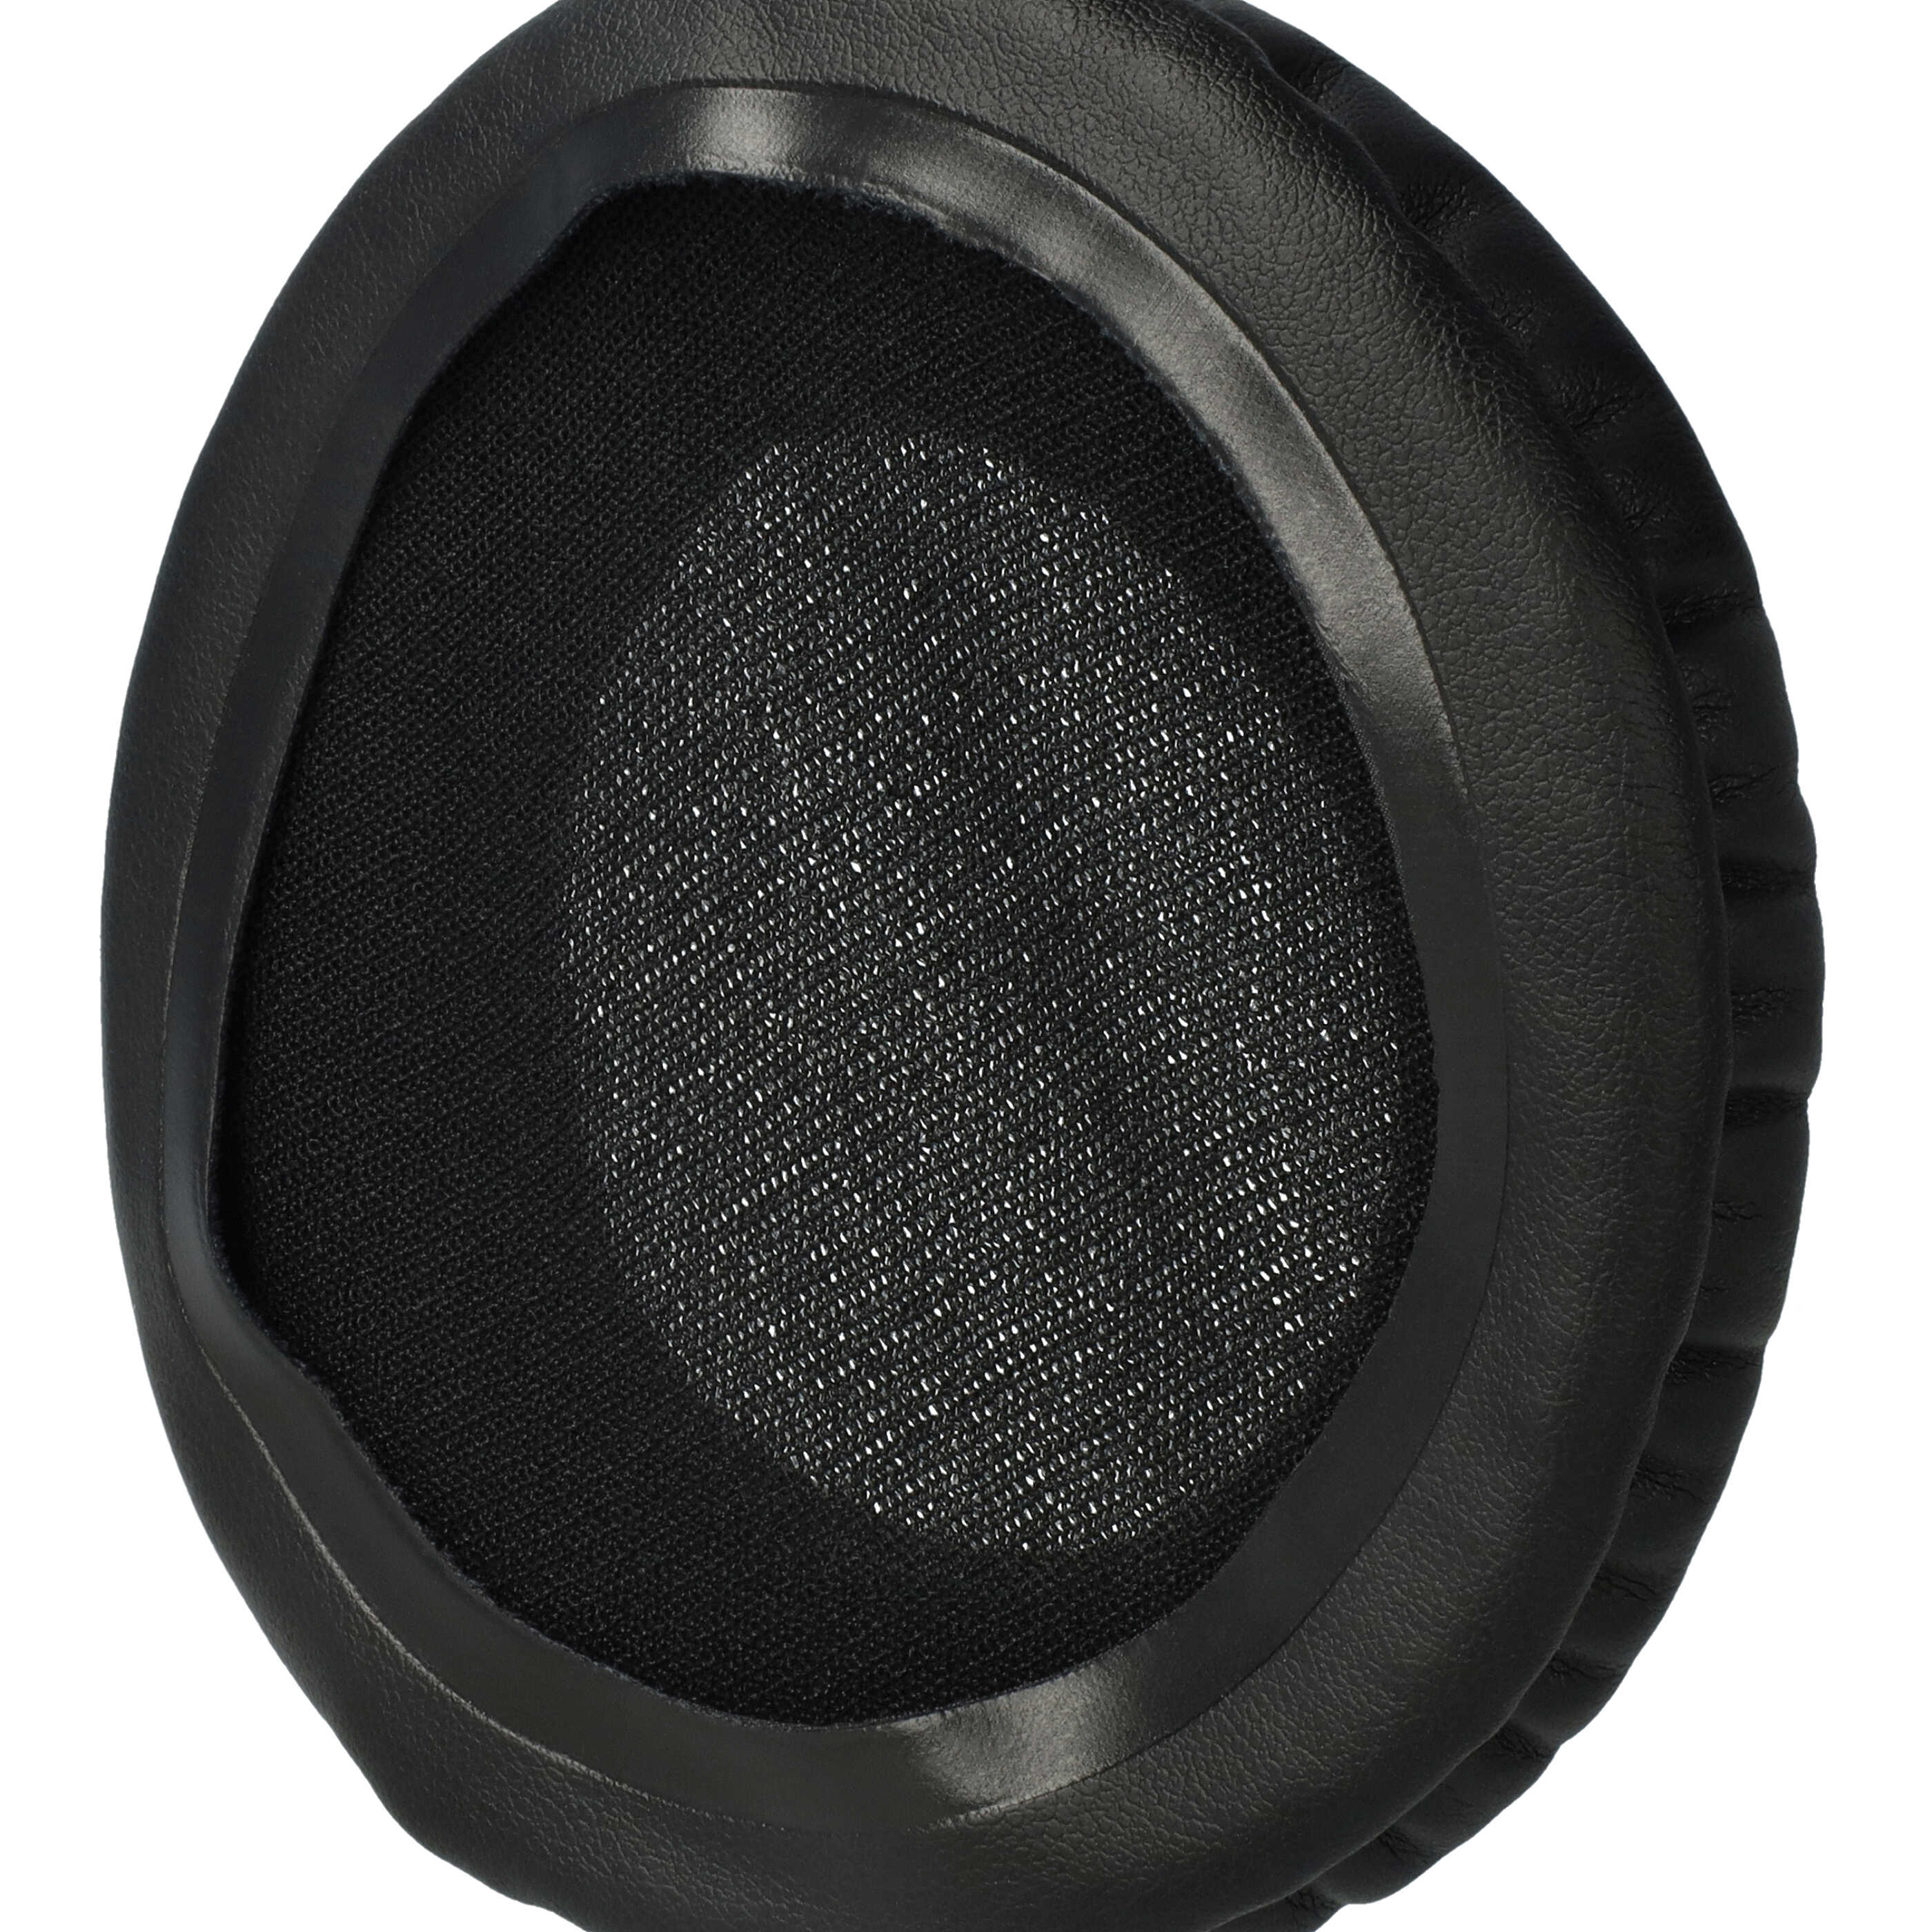 2x Poduszki do słuchawek RP-DH1200 - pady z pianką Memory, poliuretan / pianka, grub. 17 mm, czarny